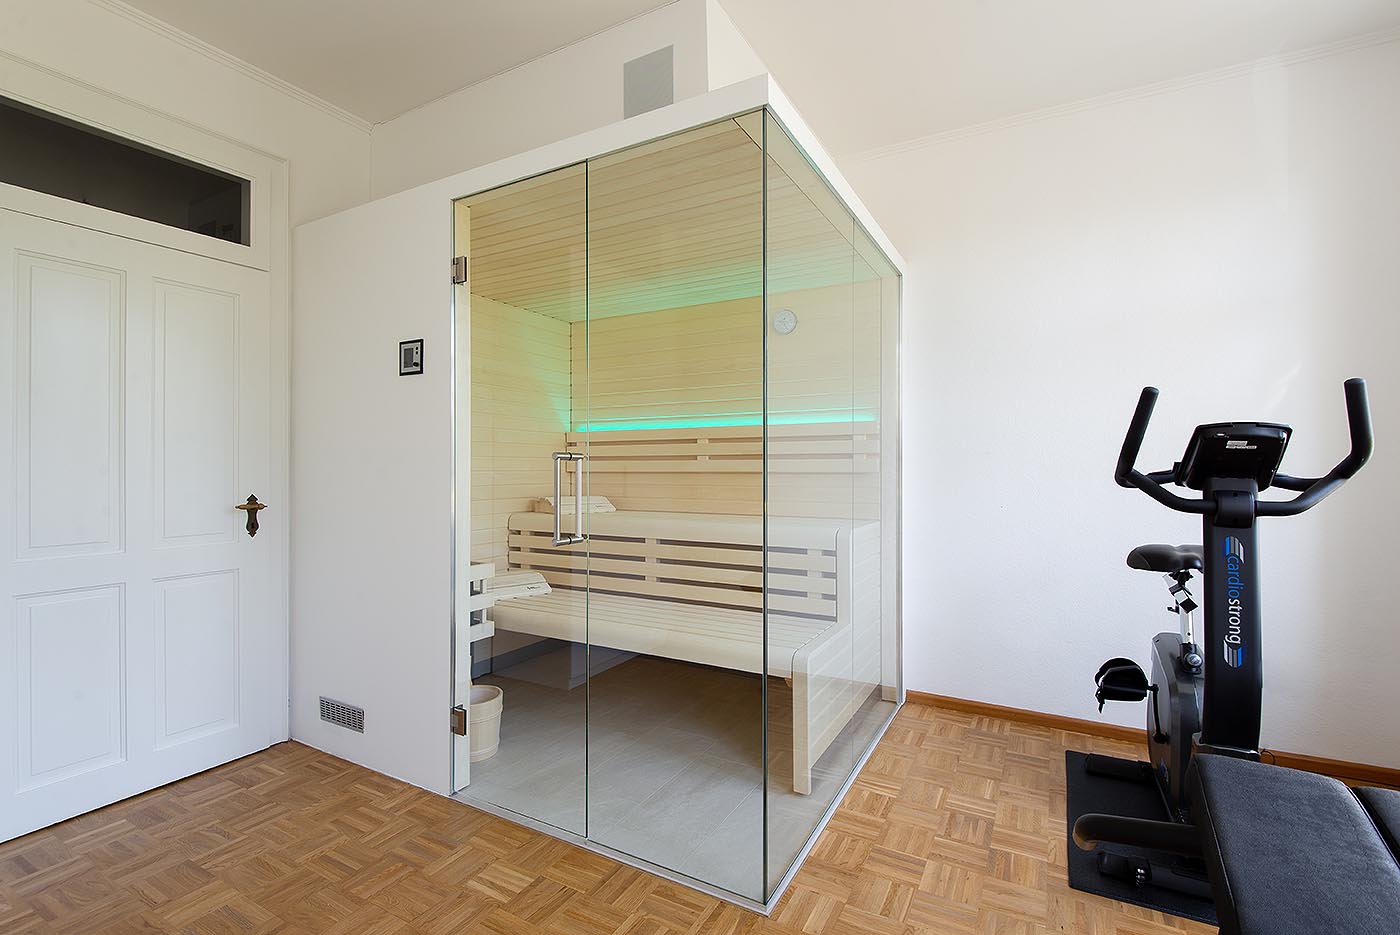 Indididuelle Design Sauna in hellem Espenholz mit Glasecke: Saunabau nach Maß. corso sauna manufaktur.